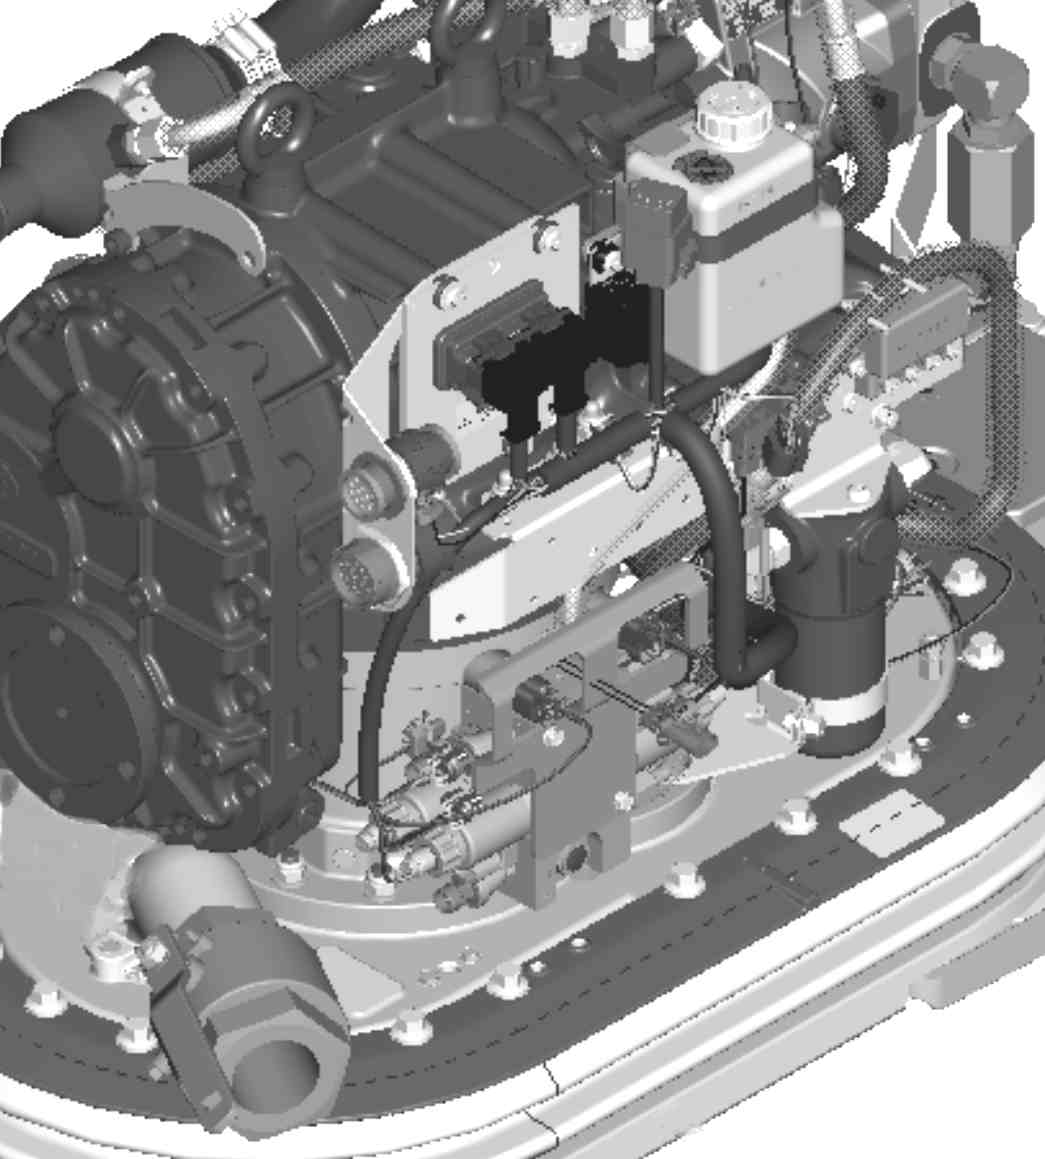 Ενότητα 2 - Γνωρίστε καλύτερα το συγκρότημα κινητήρα που αγοράσατε Γενικές πληροφορίες Μοντέλα που καλύπτονται Μοντέλα που καλύπτονται Μονάδα μετάδοσης κίνησης Pod Zeus της σειράς 3000 Αριθμός σειράς